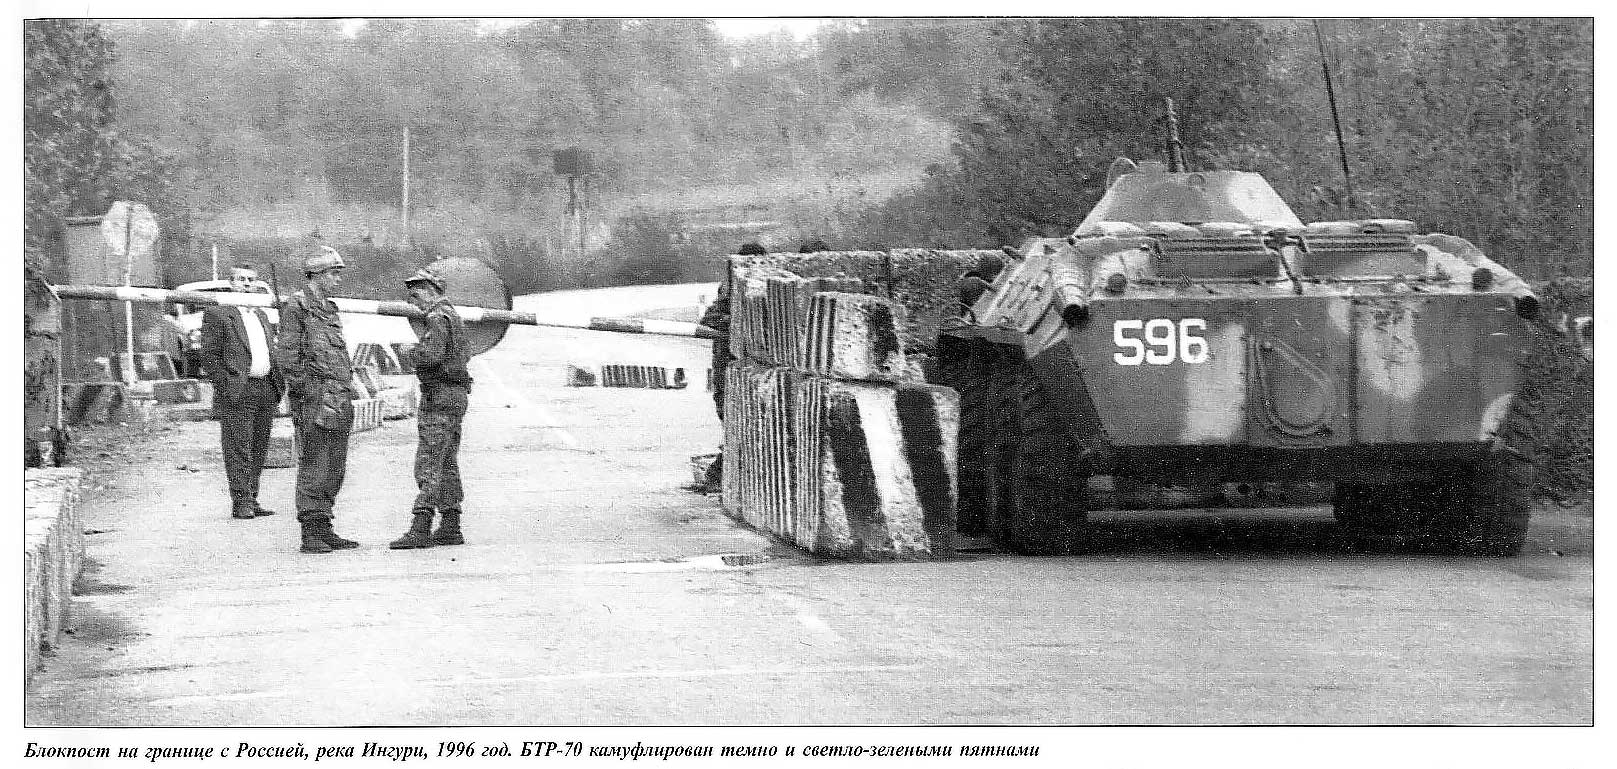 Тот самый БТР-70 на блок-посте в Абхазии (1996 г.), который меня и вдохновил